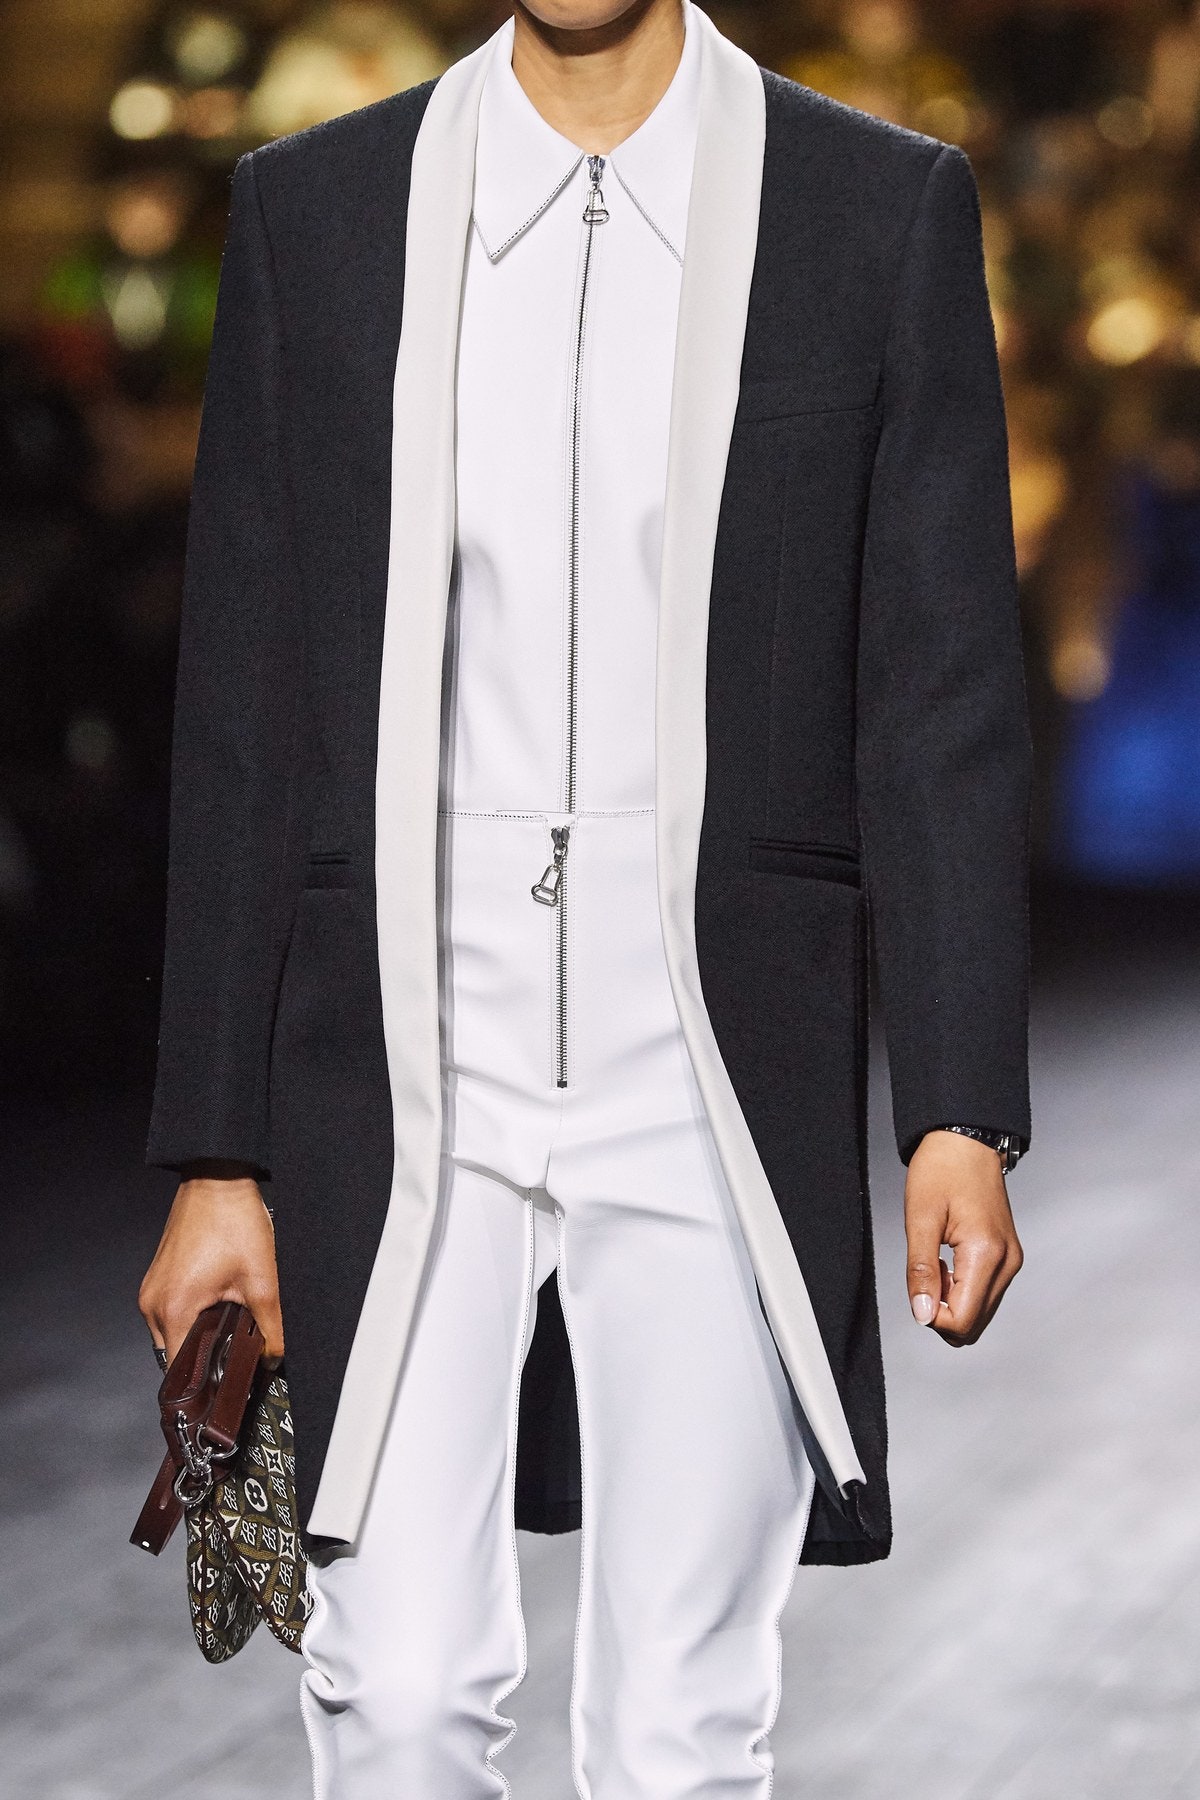 Louis Vuitton Fall Winter 2020-21 Fashion Show